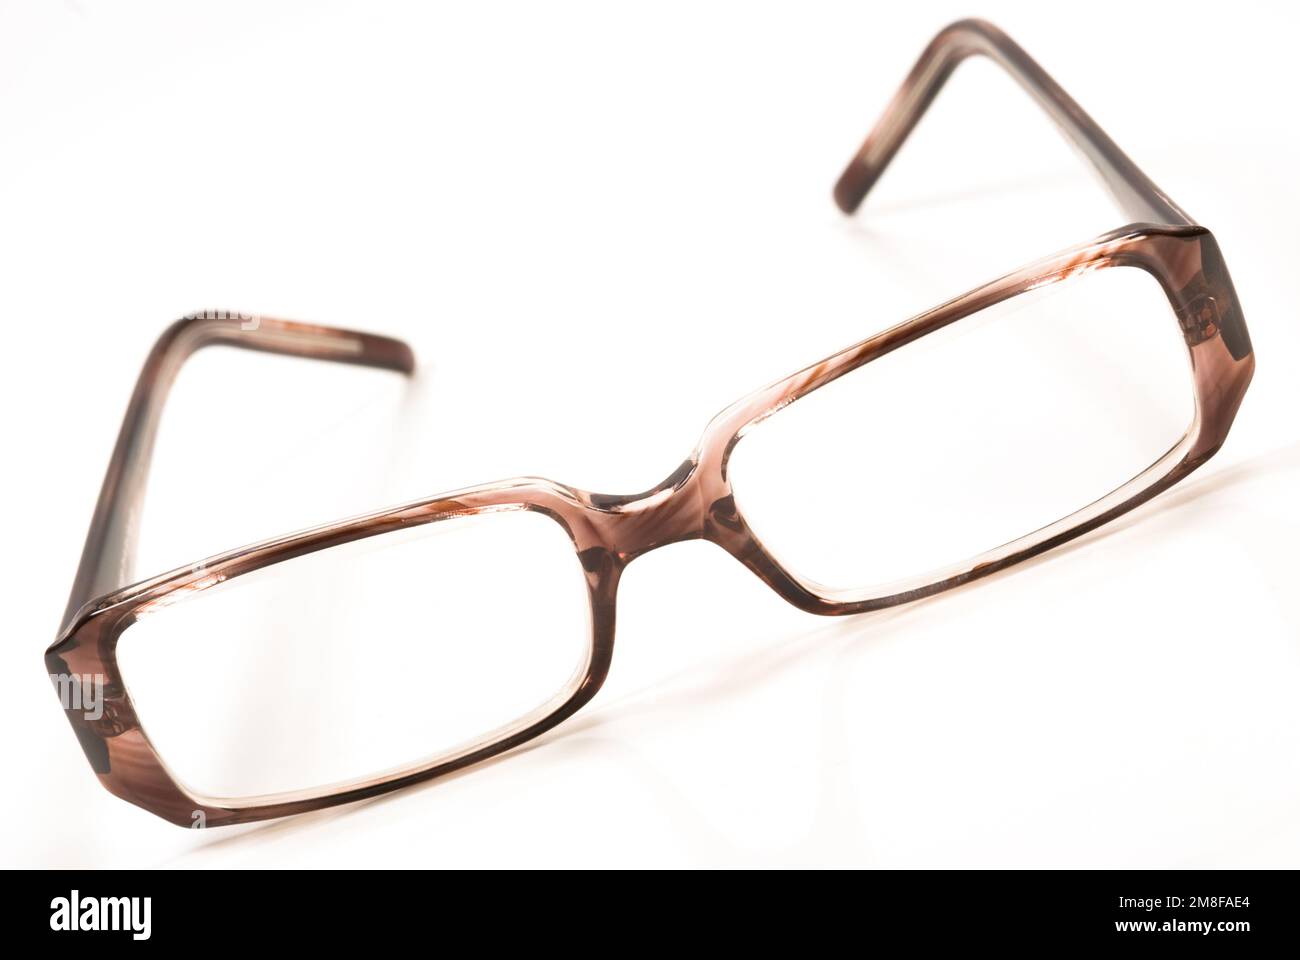 Eyeglasses isolated on the white background Stock Photo